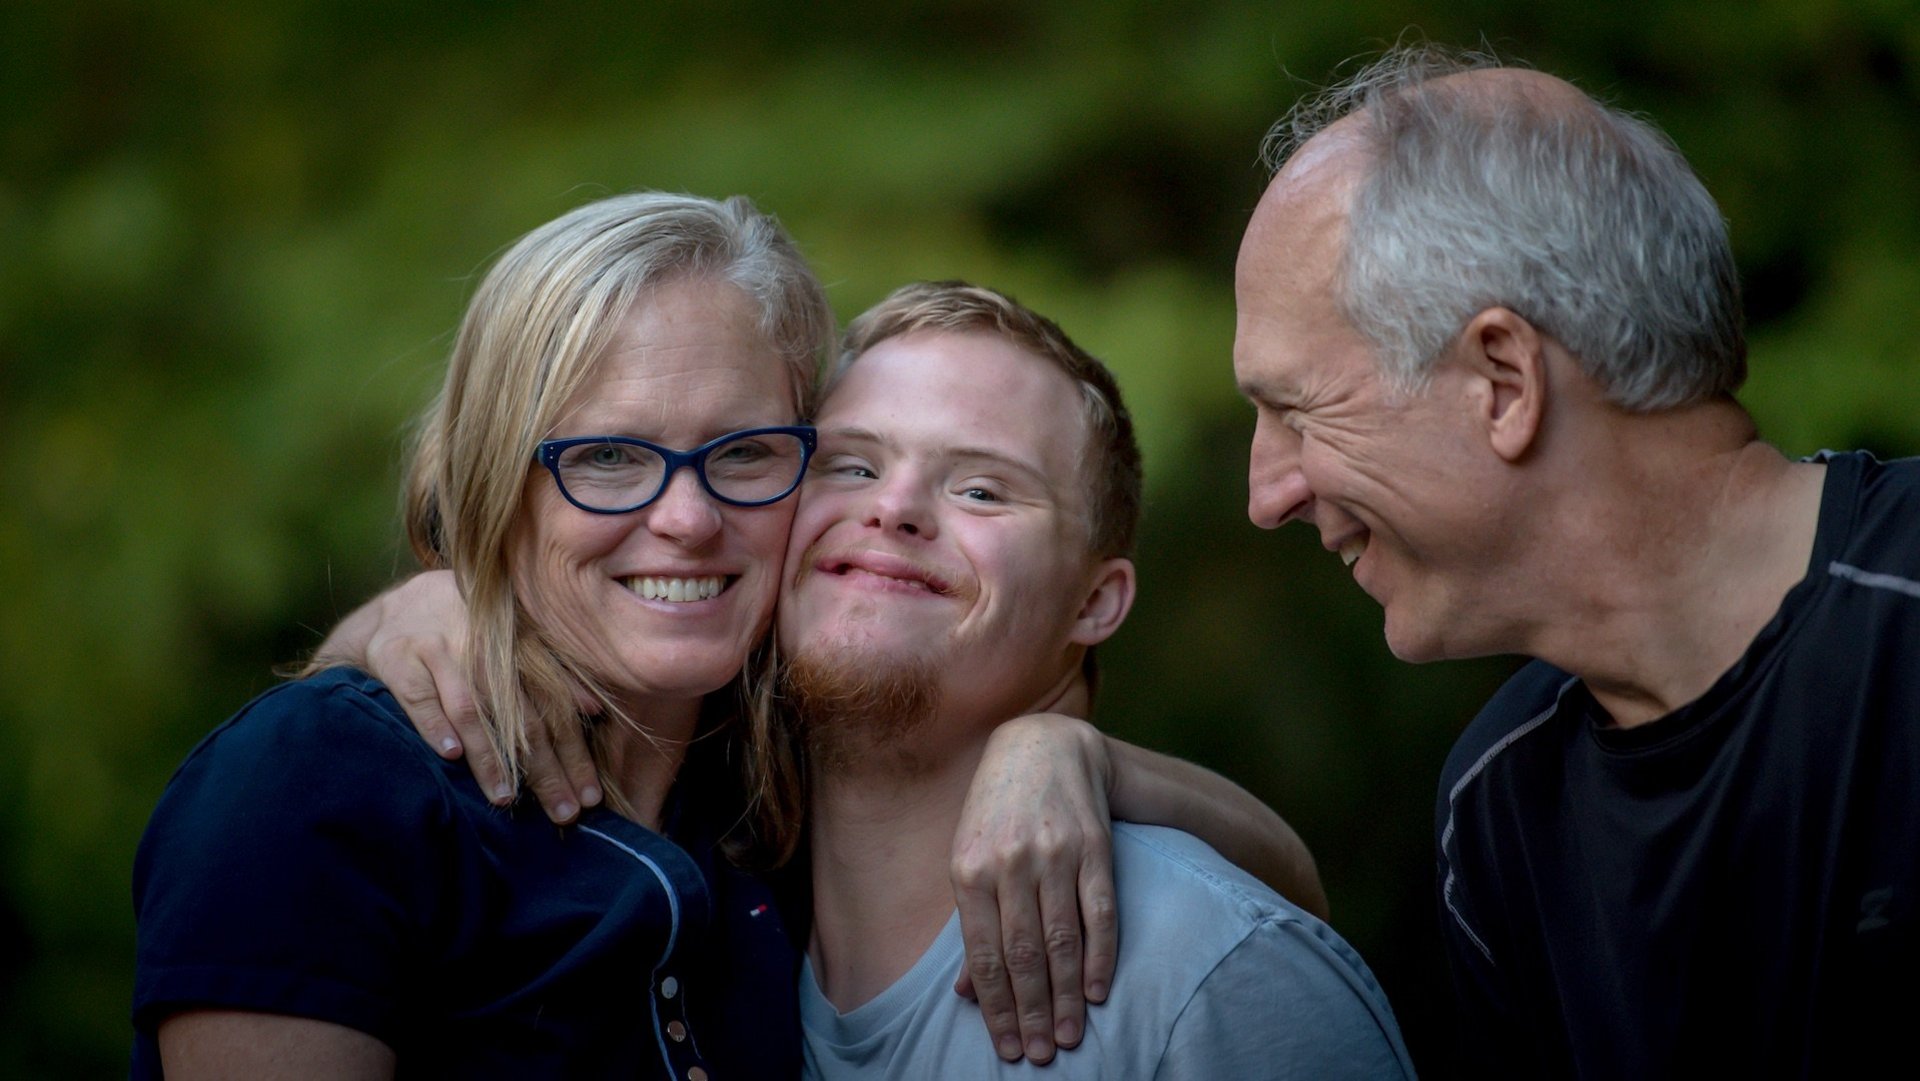 Da Bild zeigt eine lachende Familie, in der Mitte eine Person mit Down Syndrom.